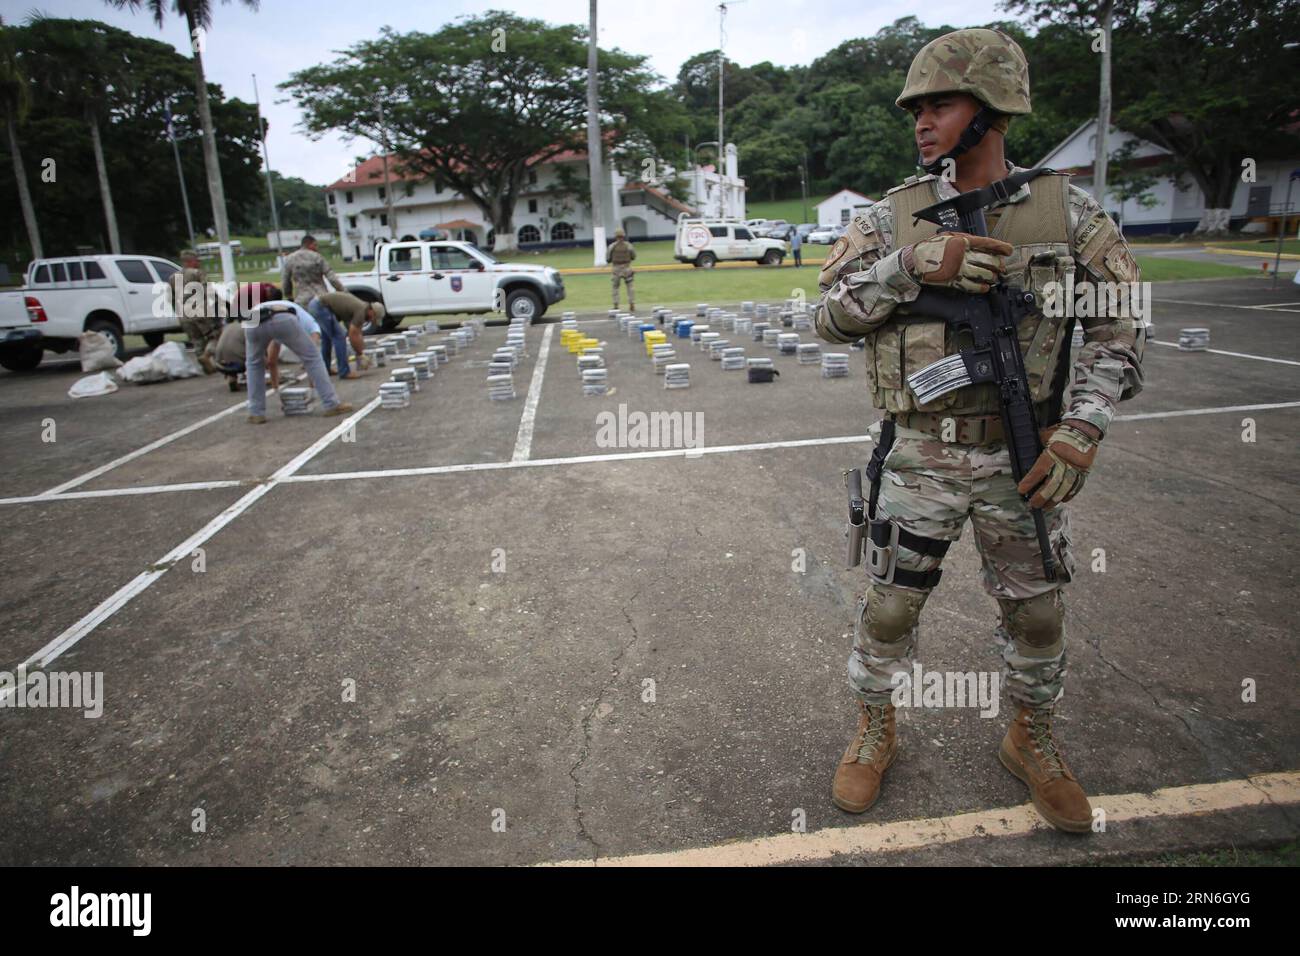 Elementi del National Air and Naval Service (SENAN) sorvegliano i pacchetti di droga durante una conferenza stampa, nella città di Panama, capitale di Panama, il 27 luglio 2015. Il SENAN sequestrò 1,9 tonnellate di droga e arrestò tre residenti colombiani e un honduregno durante le operazioni antidroga nelle province di Veraguas e Bocas del Toro il 25 e 26 luglio, secondo la stampa locale. (rtg) PANAMA-PANAMA-PANAMA-SICUREZZA-TRAFFICO DI DROGA MAURICIOxVALENZUELA PUBLICATIONxNOTxINxCHN elemento dei pacchetti antidroga della Guardia SENANA del servizio nazionale aereo e navale durante una conferenza stampa nella città di Panama Foto Stock